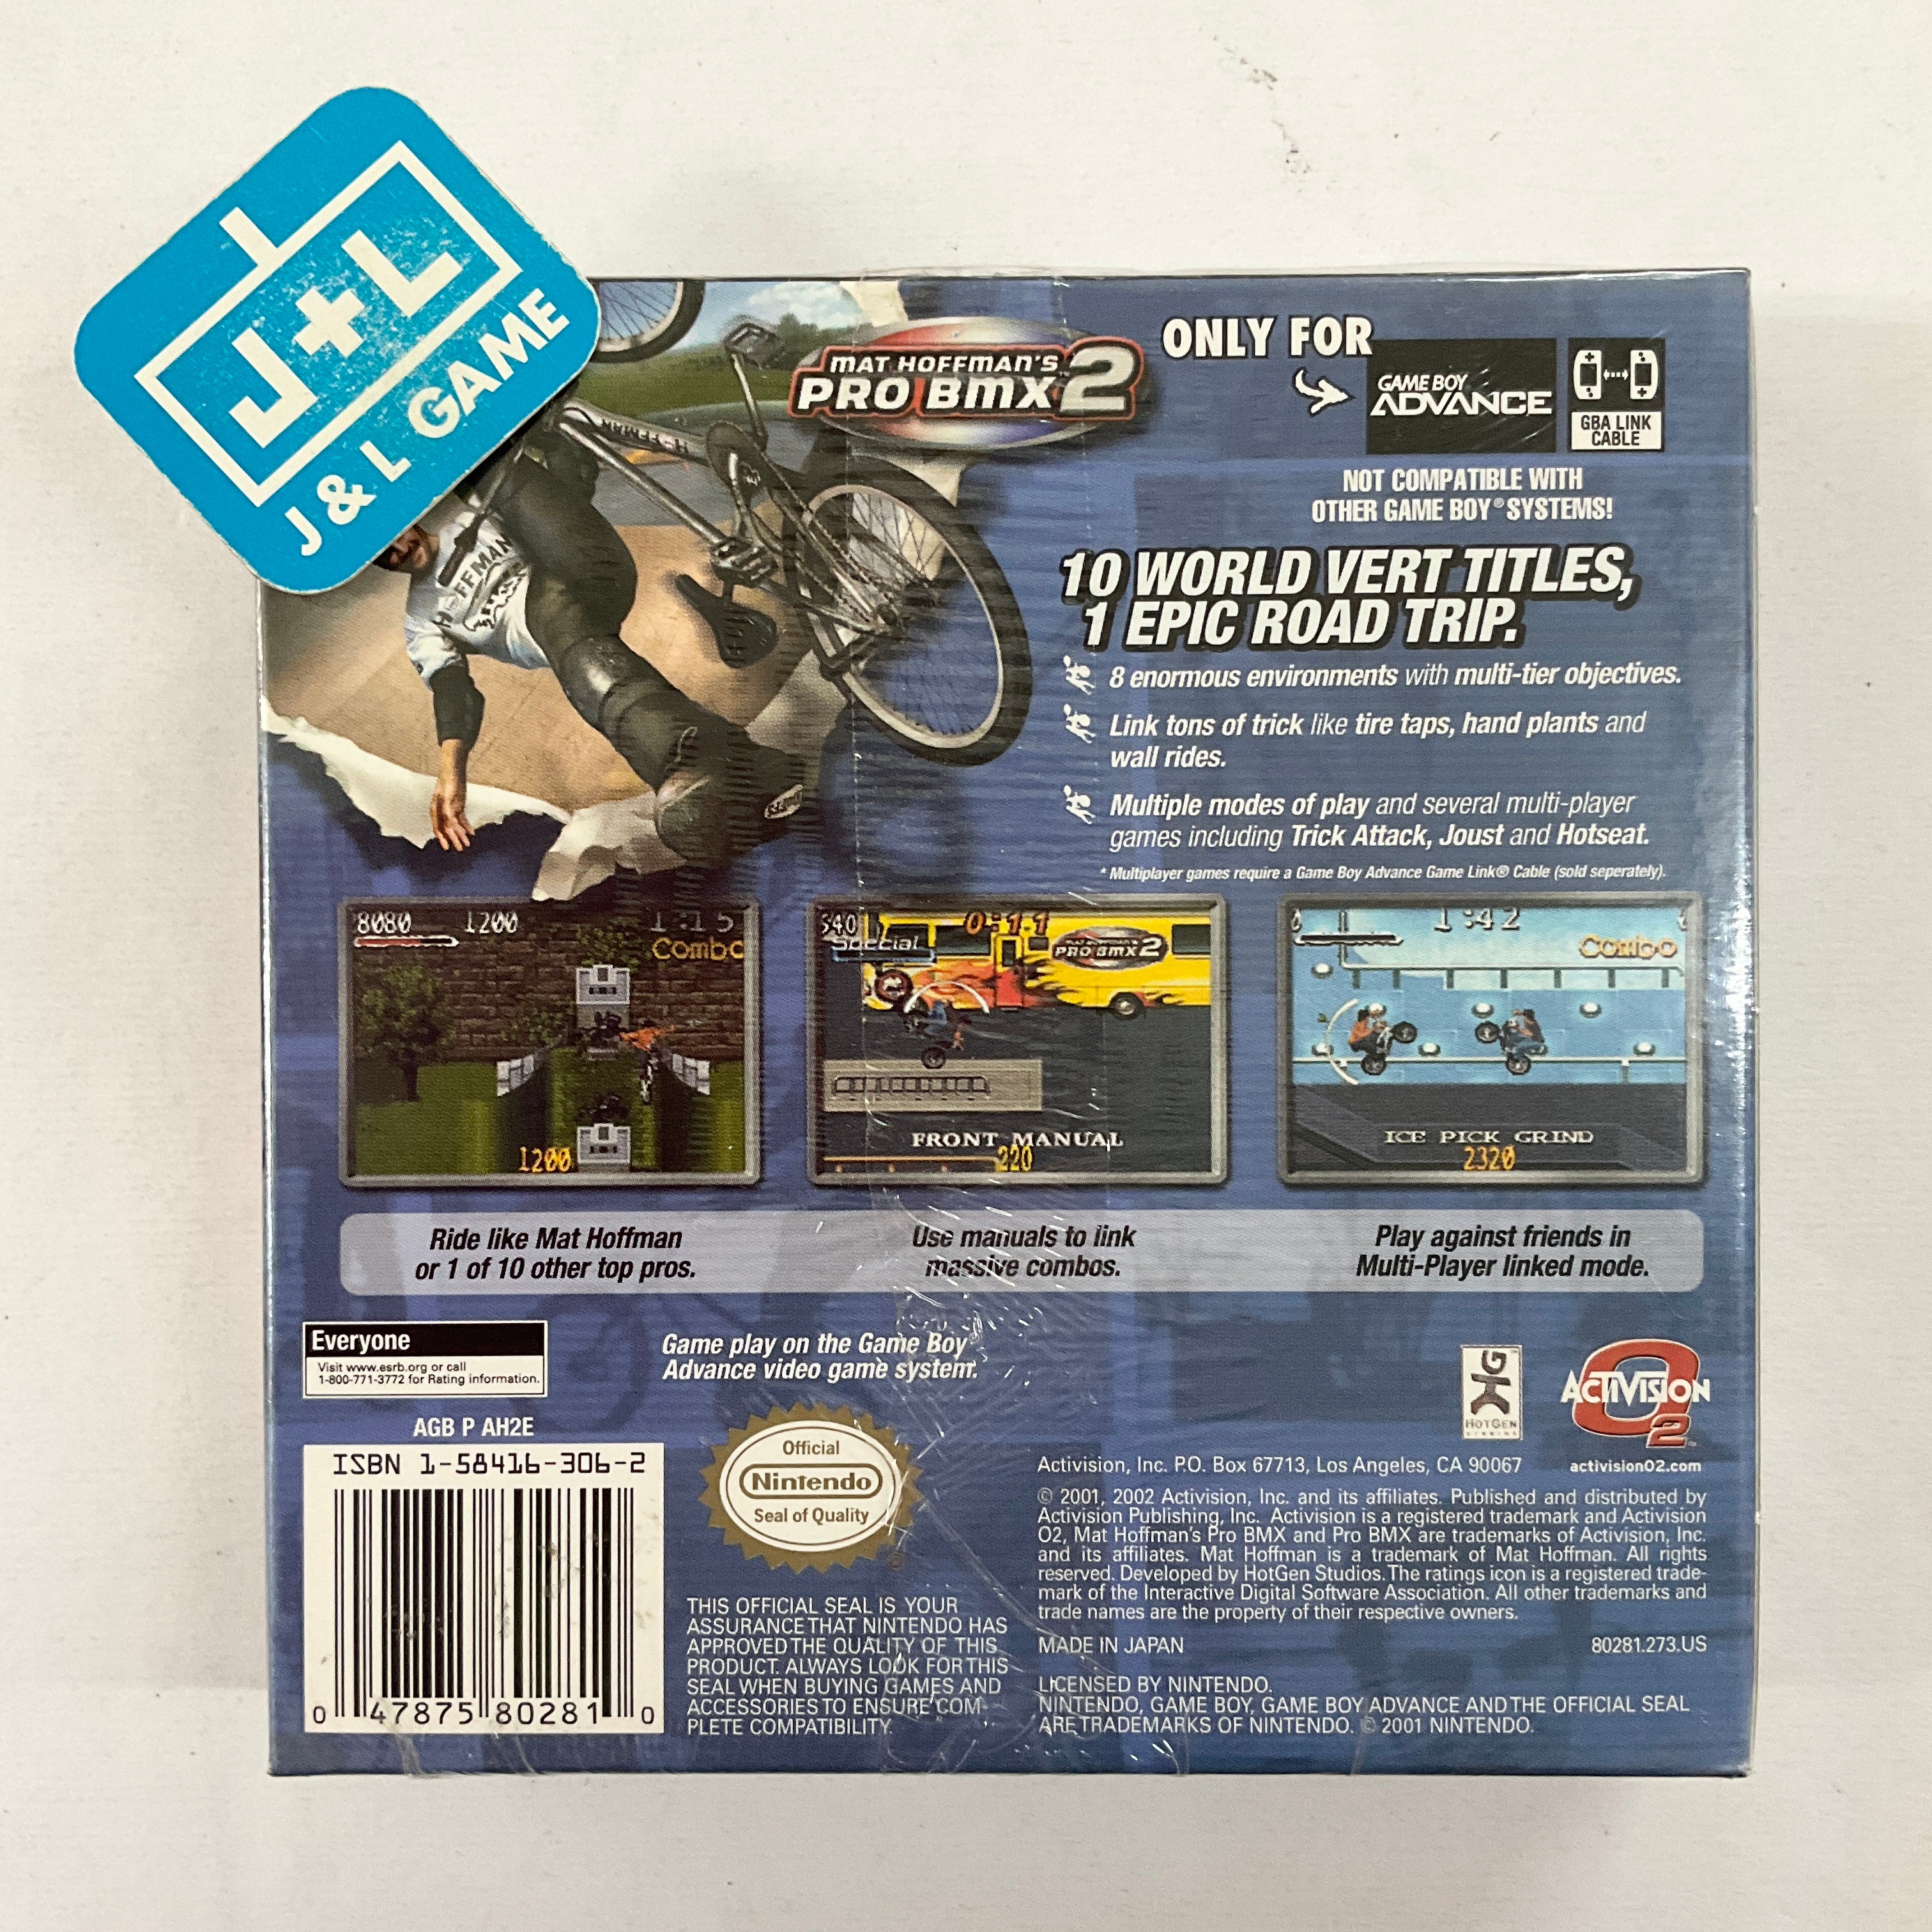 Mat Hoffman's Pro BMX 2 - (GBA) Game Boy Advance